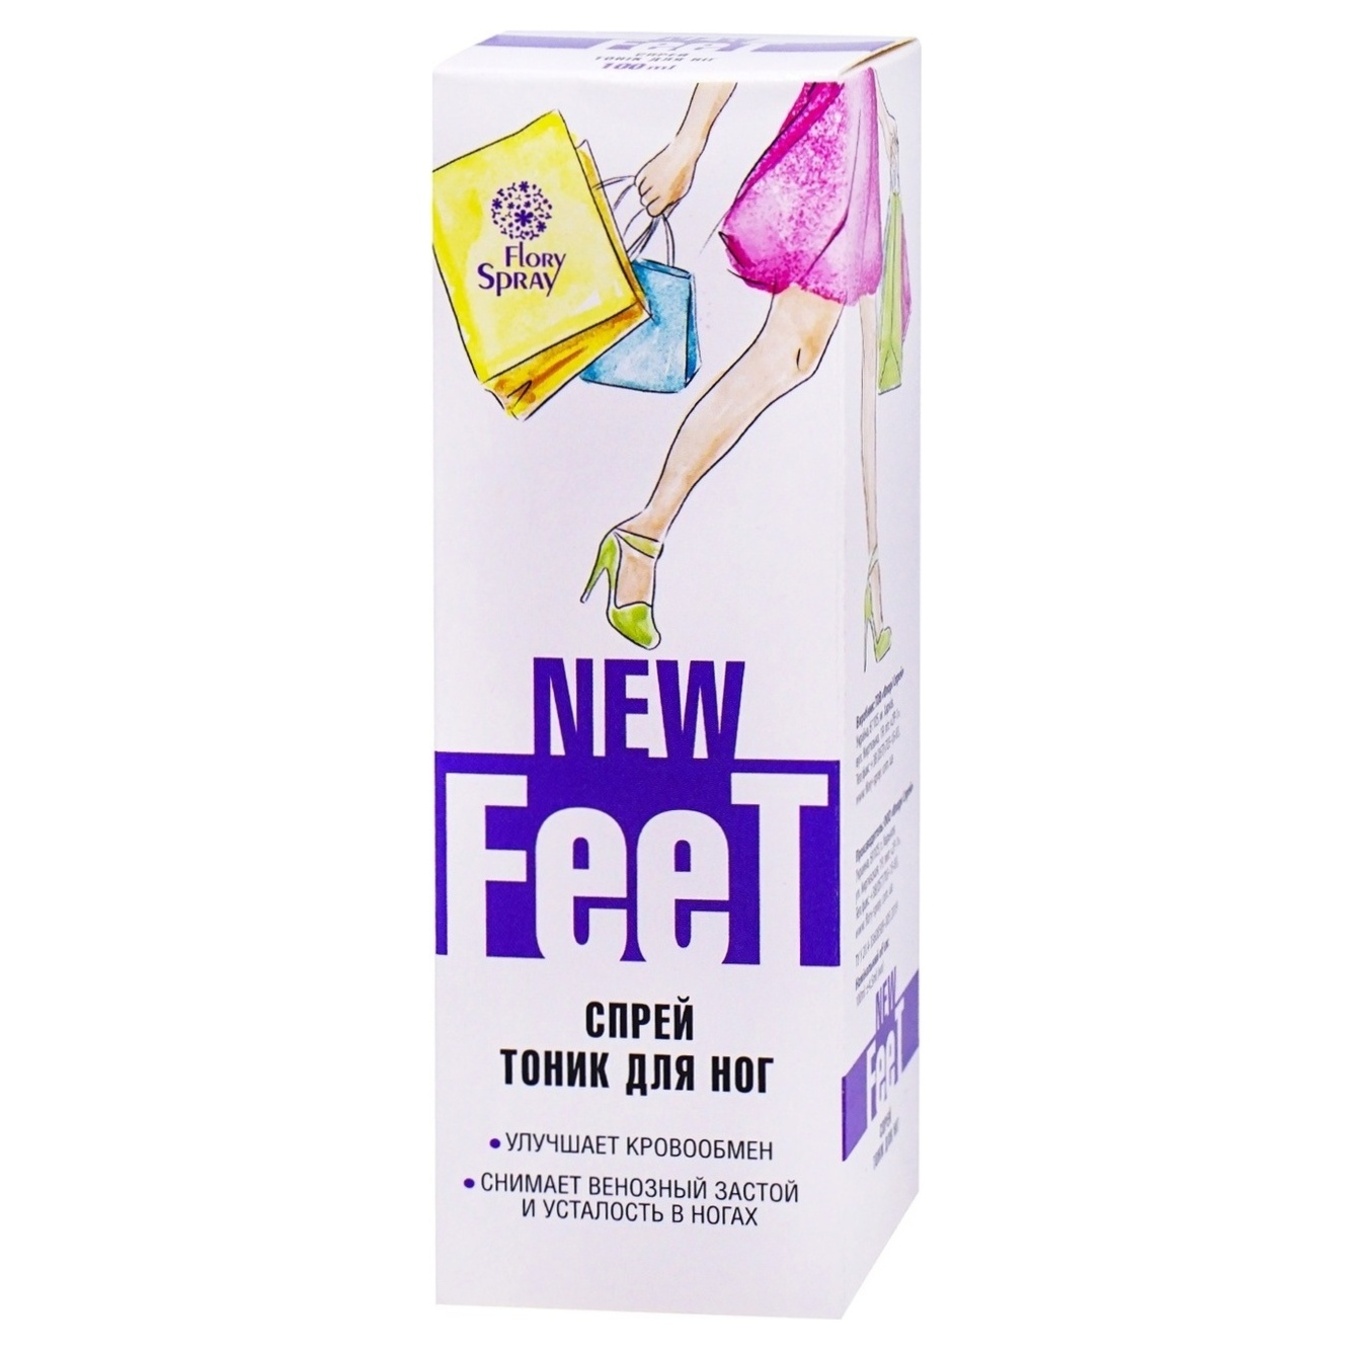 Тонік спрей New Feet засіб для поліпшення кровообігу зняття венозного застою та втоми у ногах 100мл